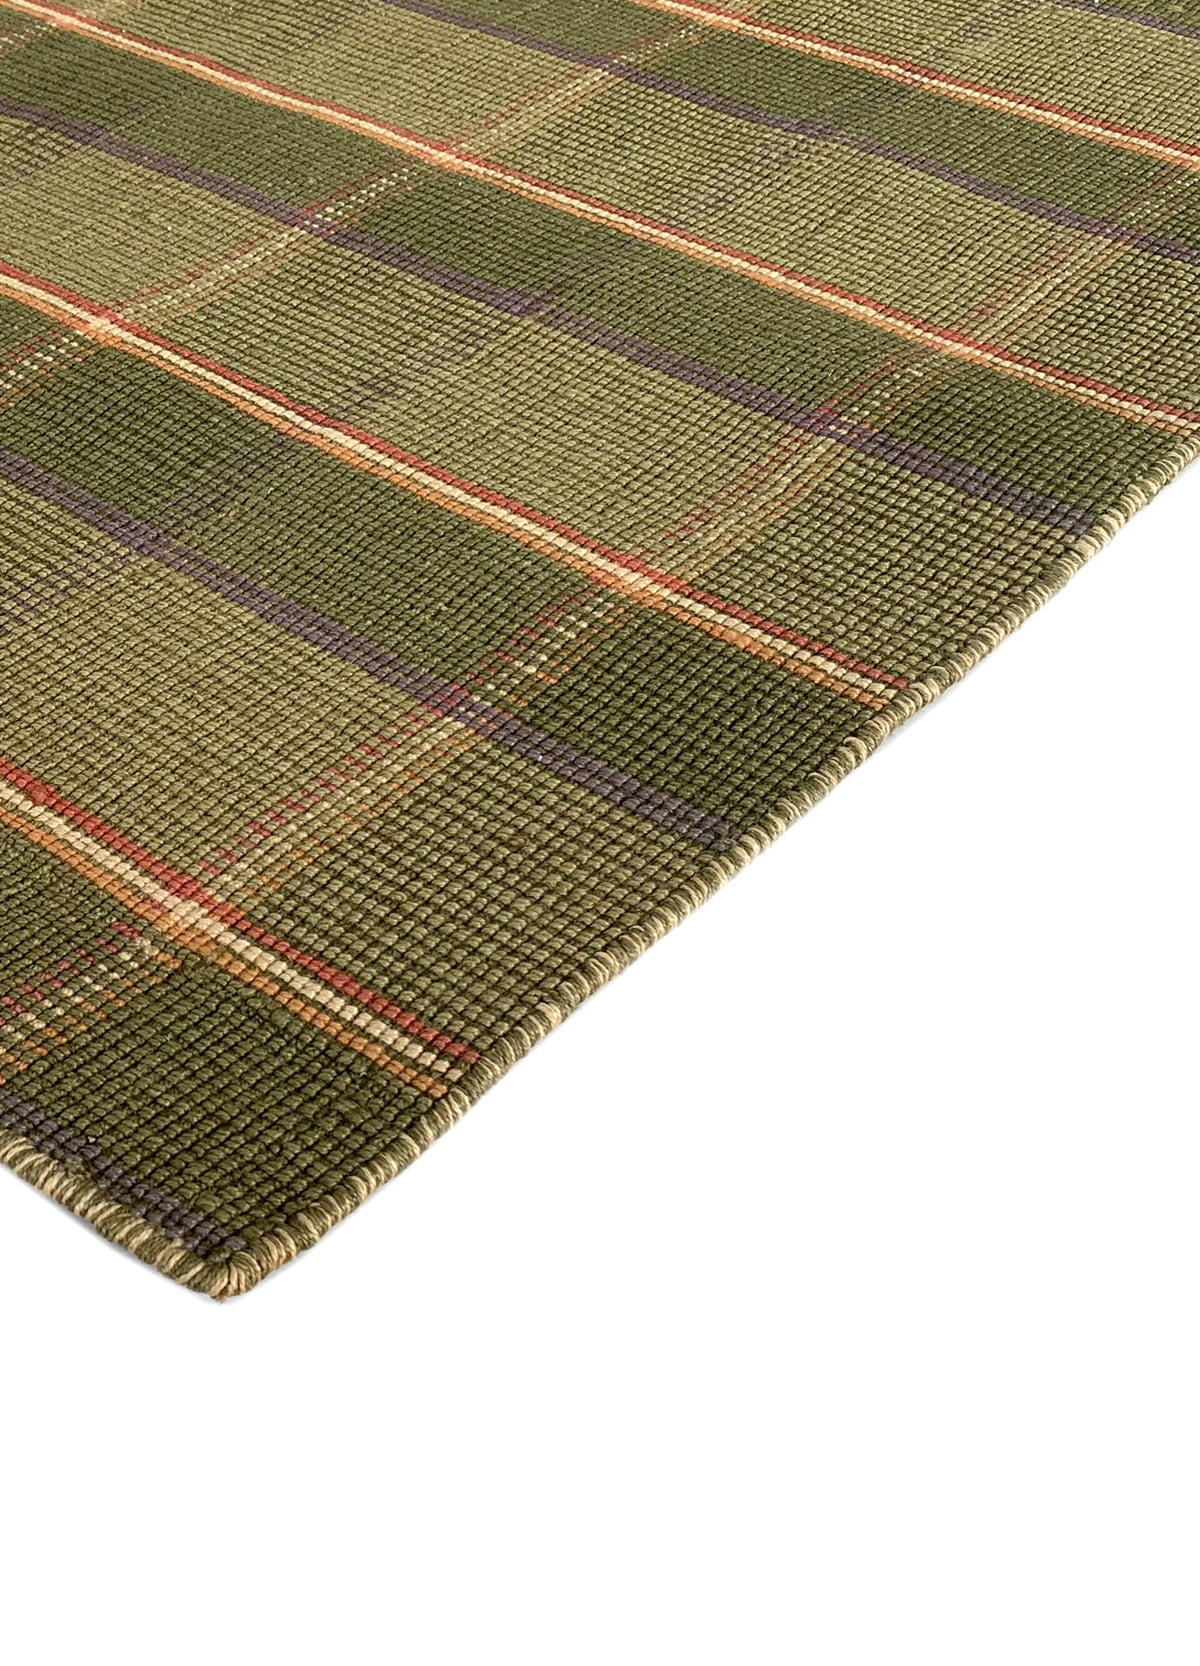 Rugslane Green Jute Carpet 4.6ft X 6.6ft